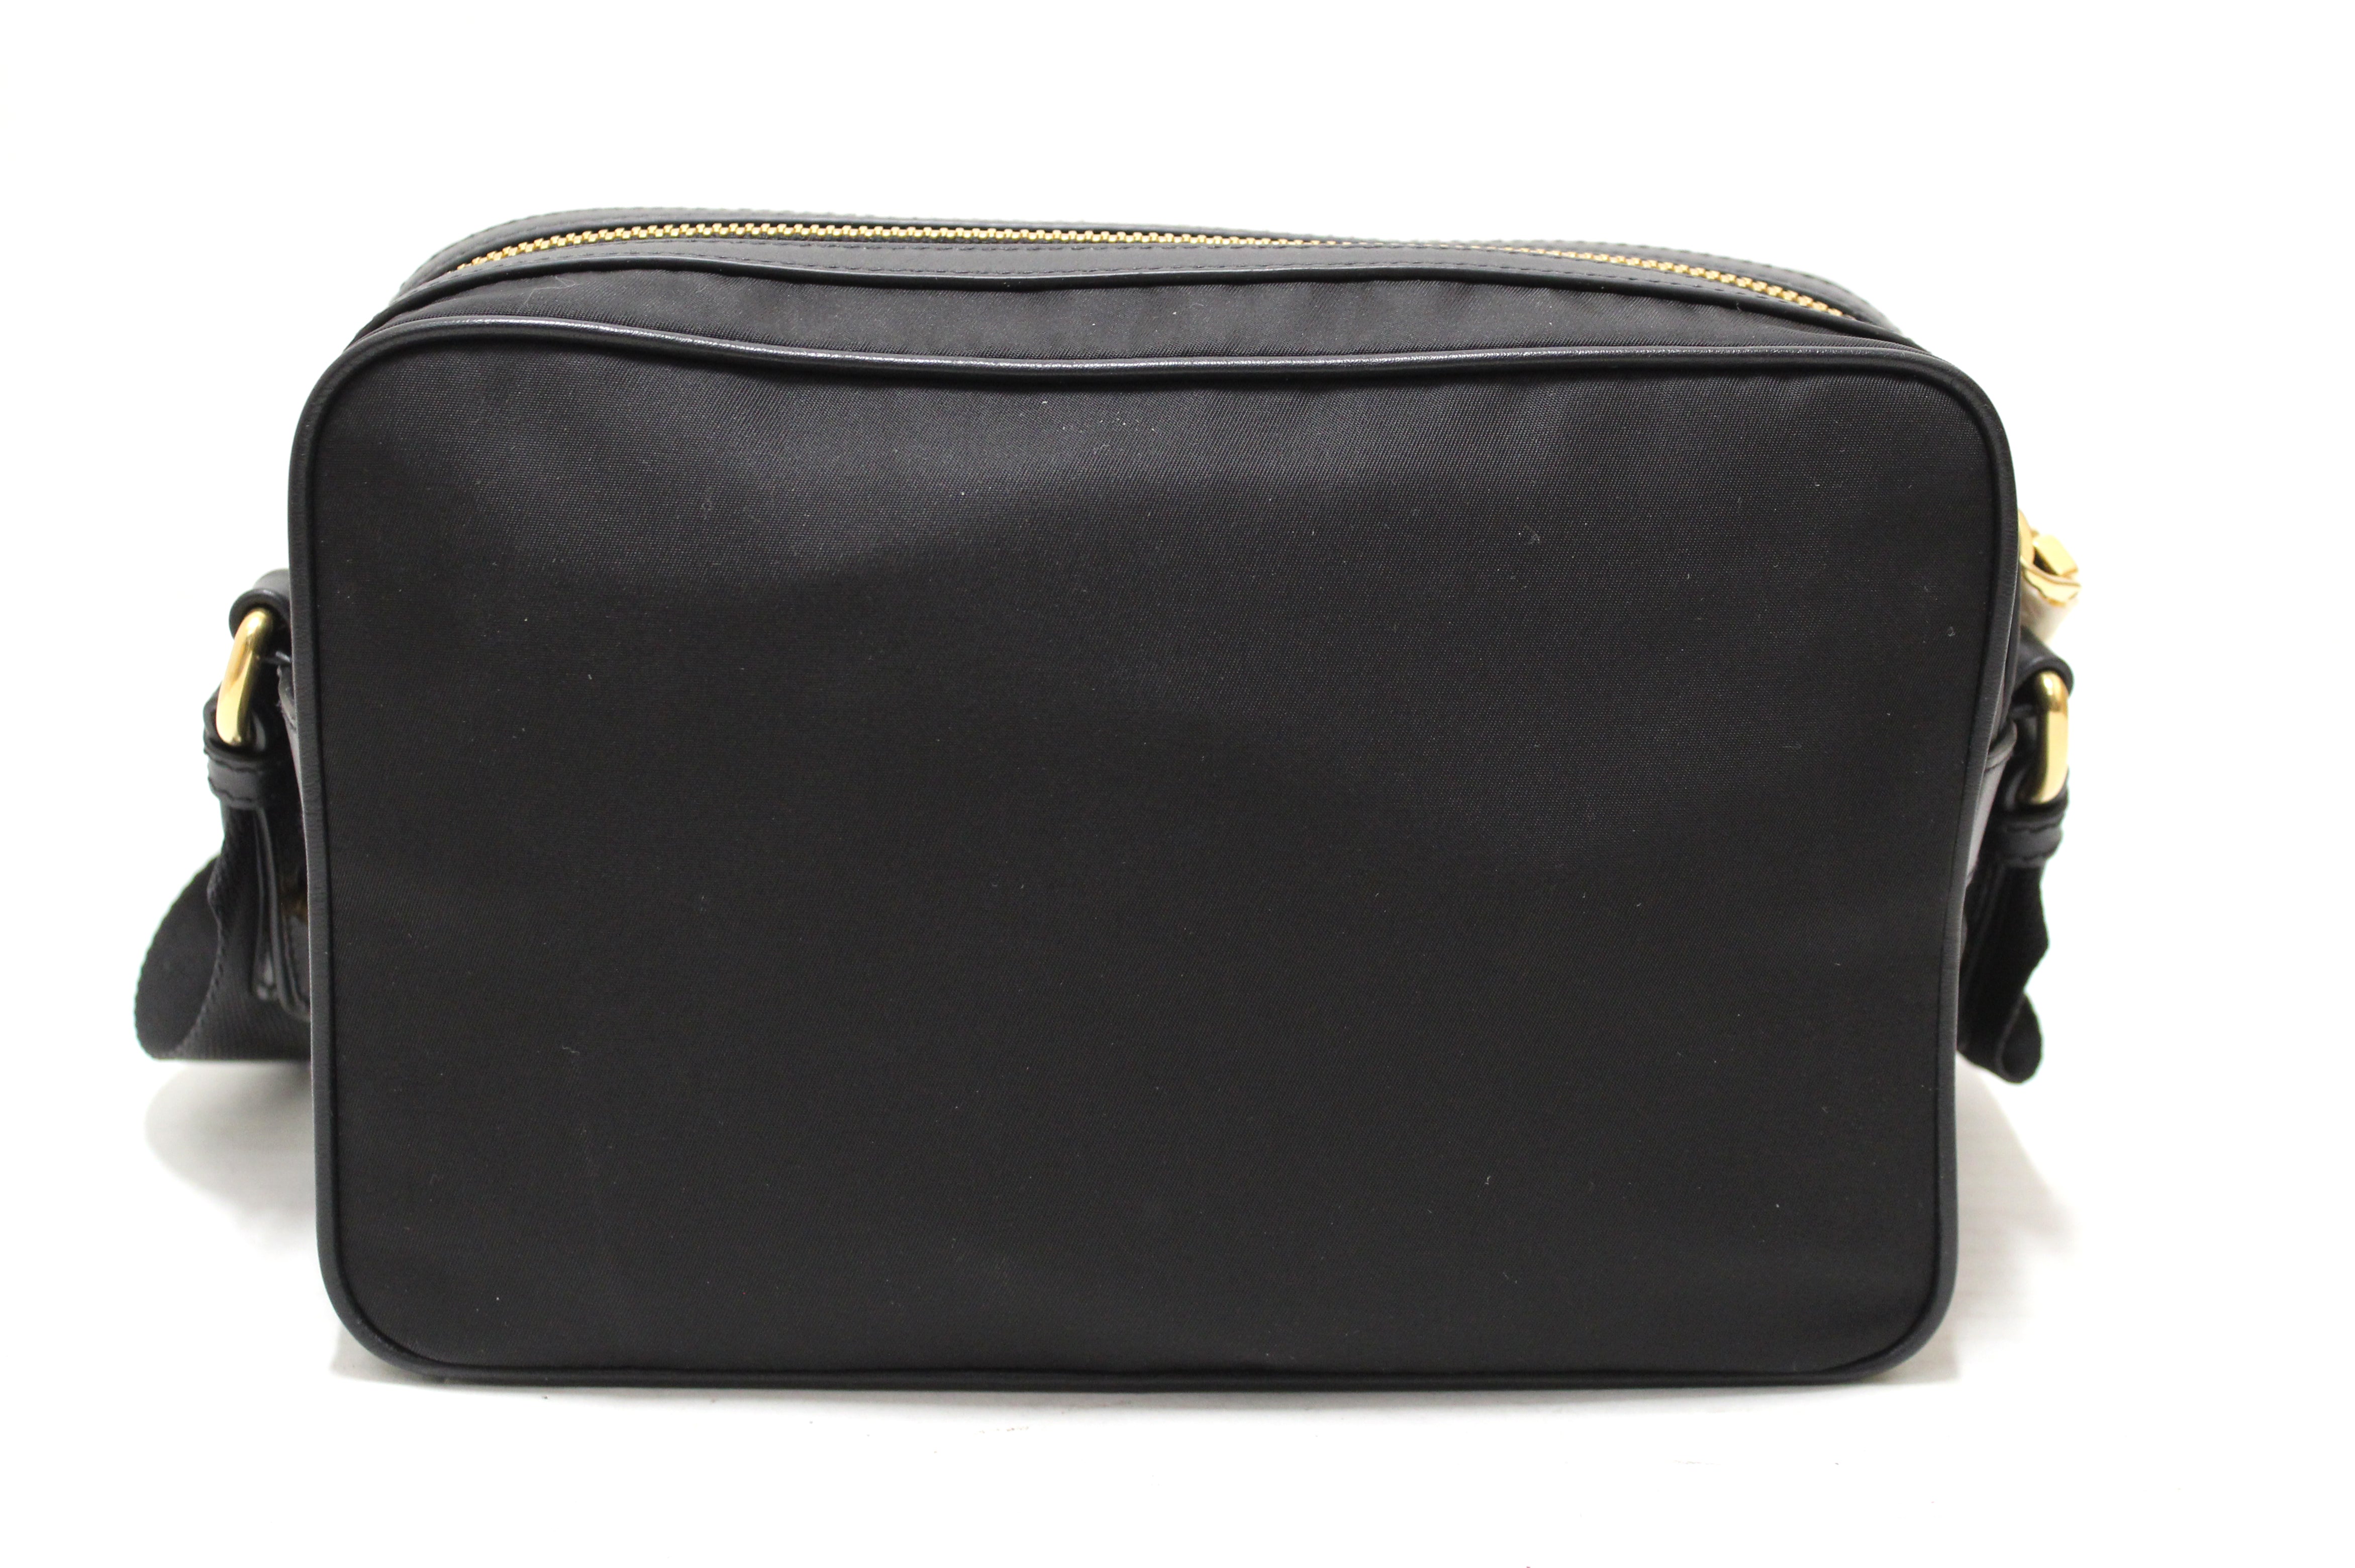 Prada Bandoliera Nylon Shoulder Bag In Black